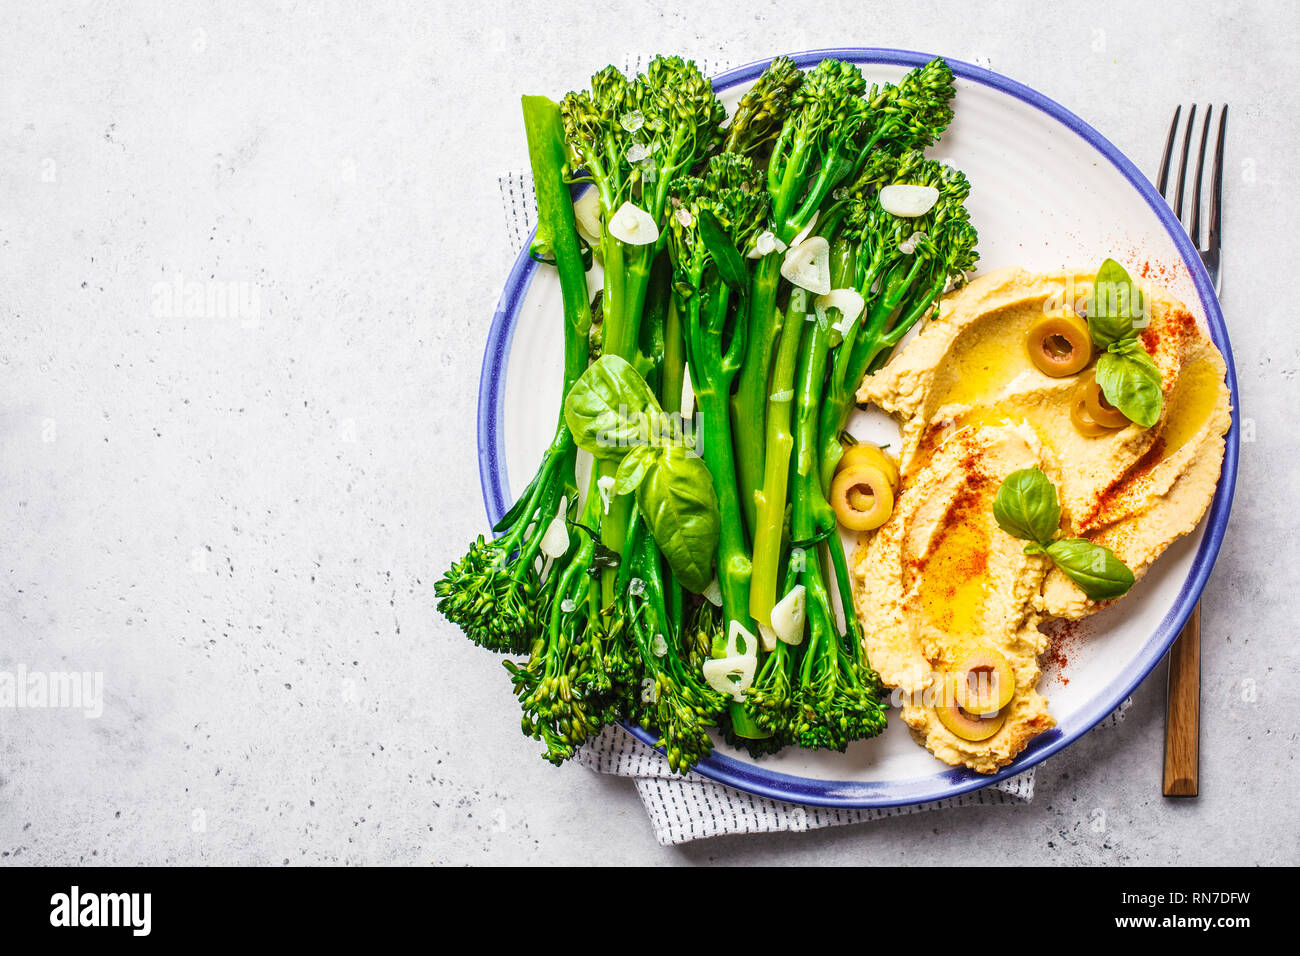 Broccolini cuit avec du hoummos sur une plaque blanche, vue du dessus. La nourriture végétalienne saine concept. Banque D'Images